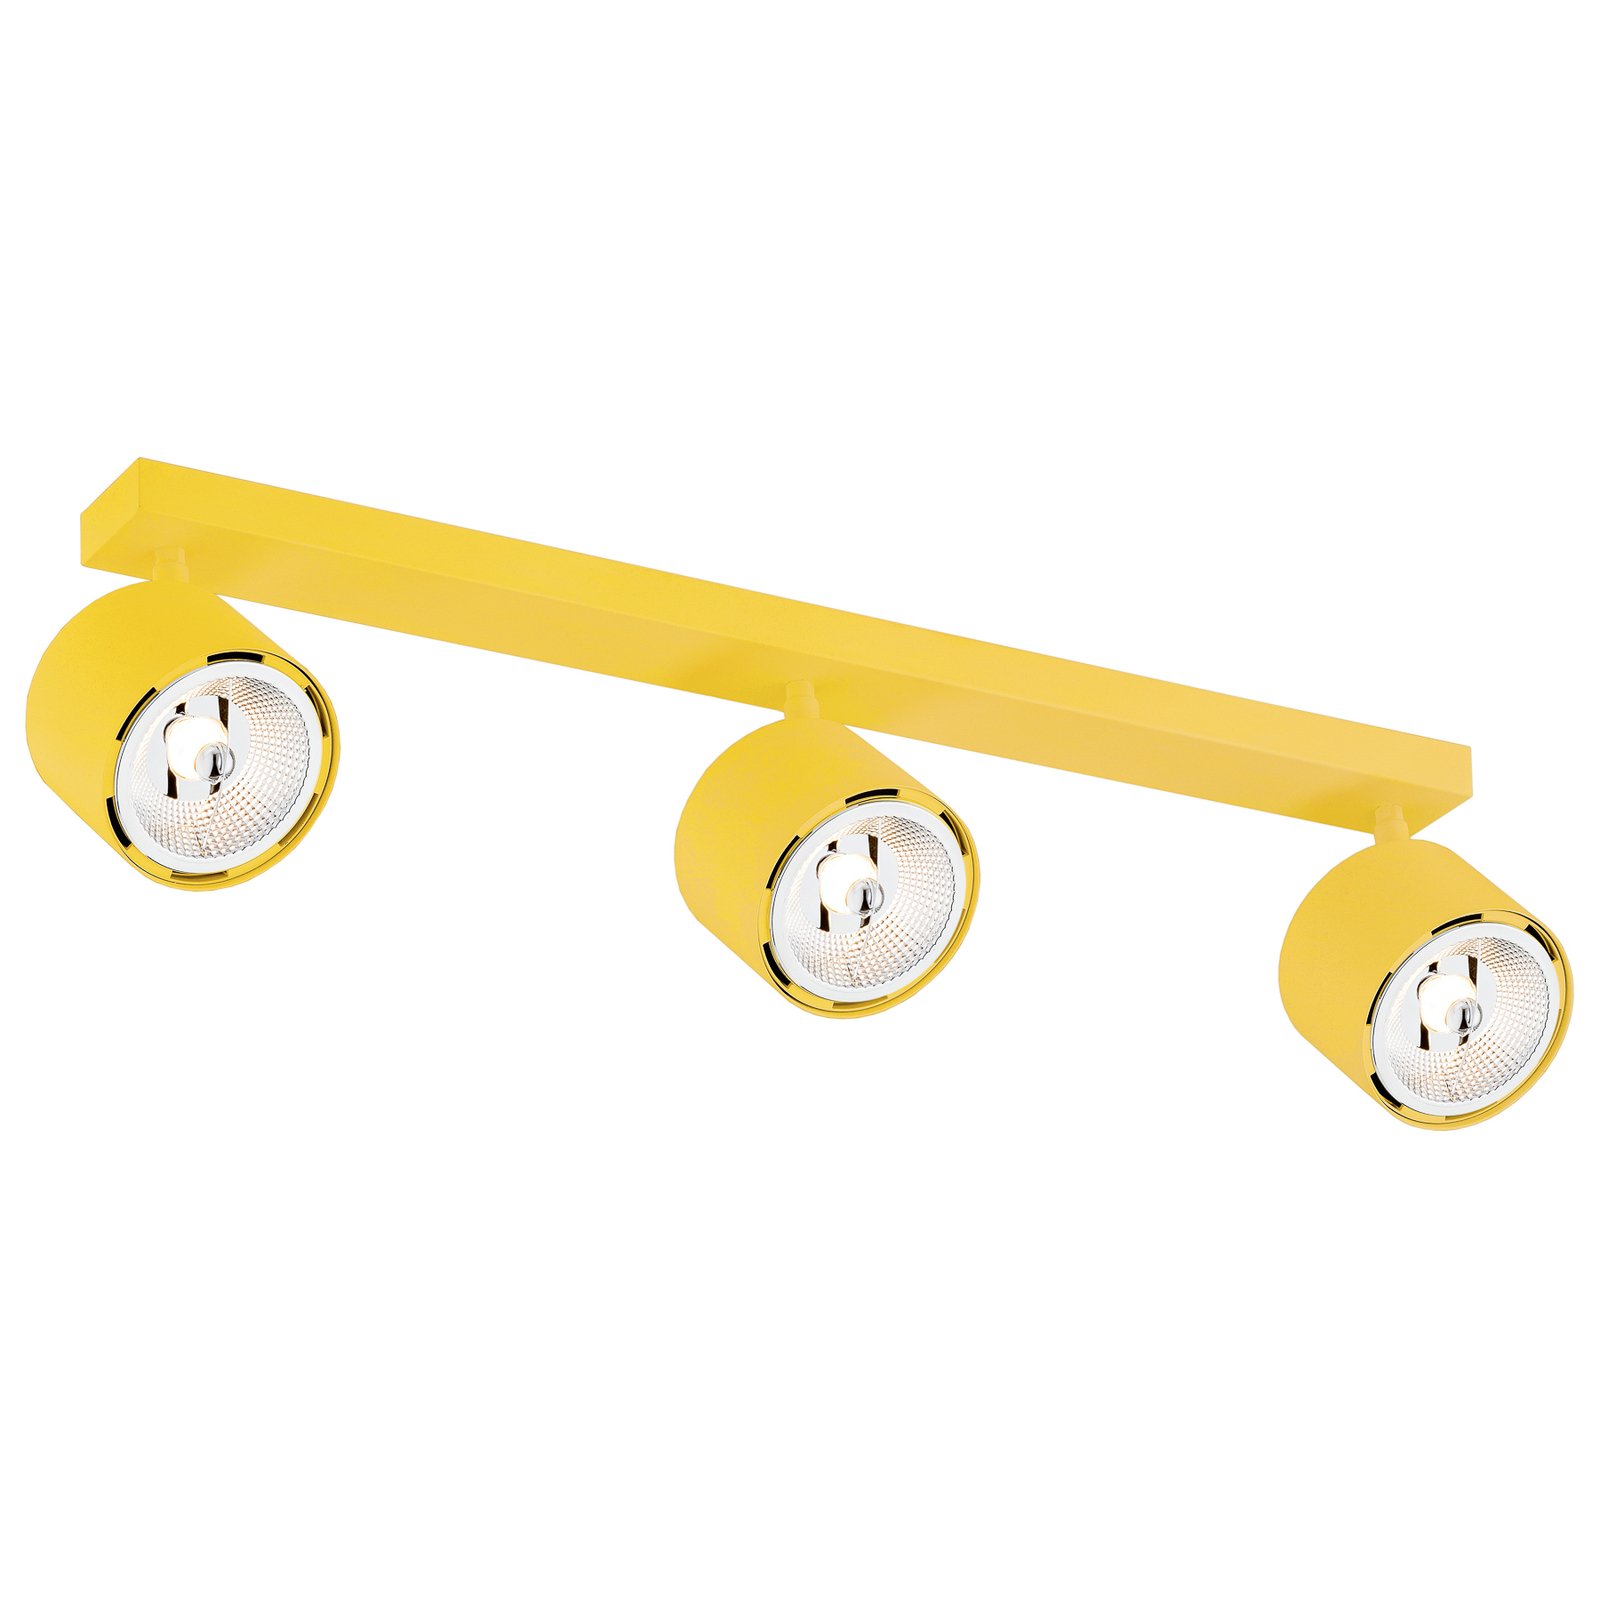 Projetor de teto Chloe ajustável com três luzes, amarelo